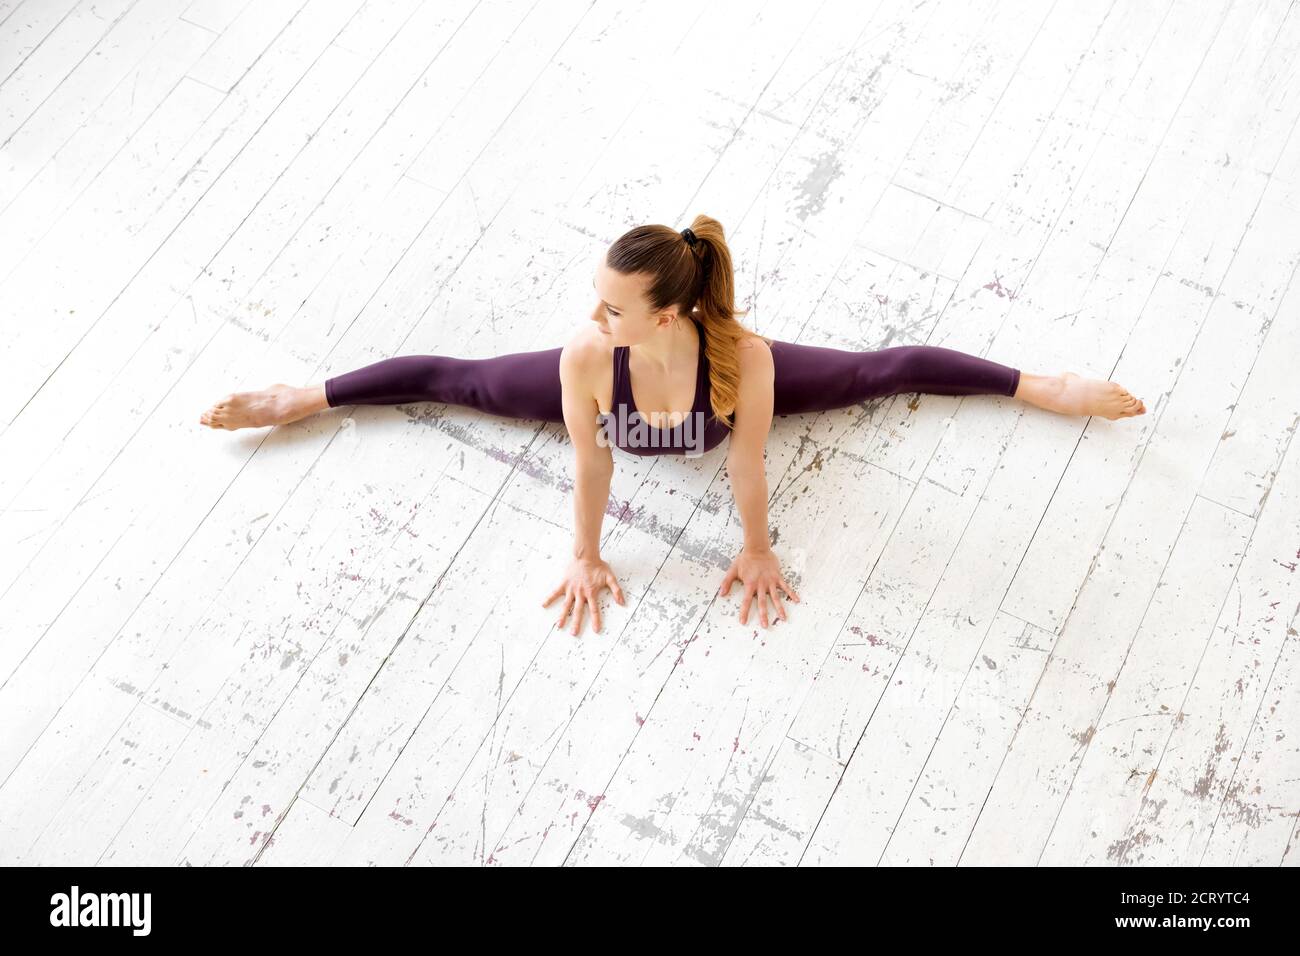 Jeune femme gymnaste faisant une pose frontale divisée dans un vue de dessus en bas sur un sol blanc dans une haute salle de gym clé dans un concept de santé et de forme physique avec copyspace Banque D'Images